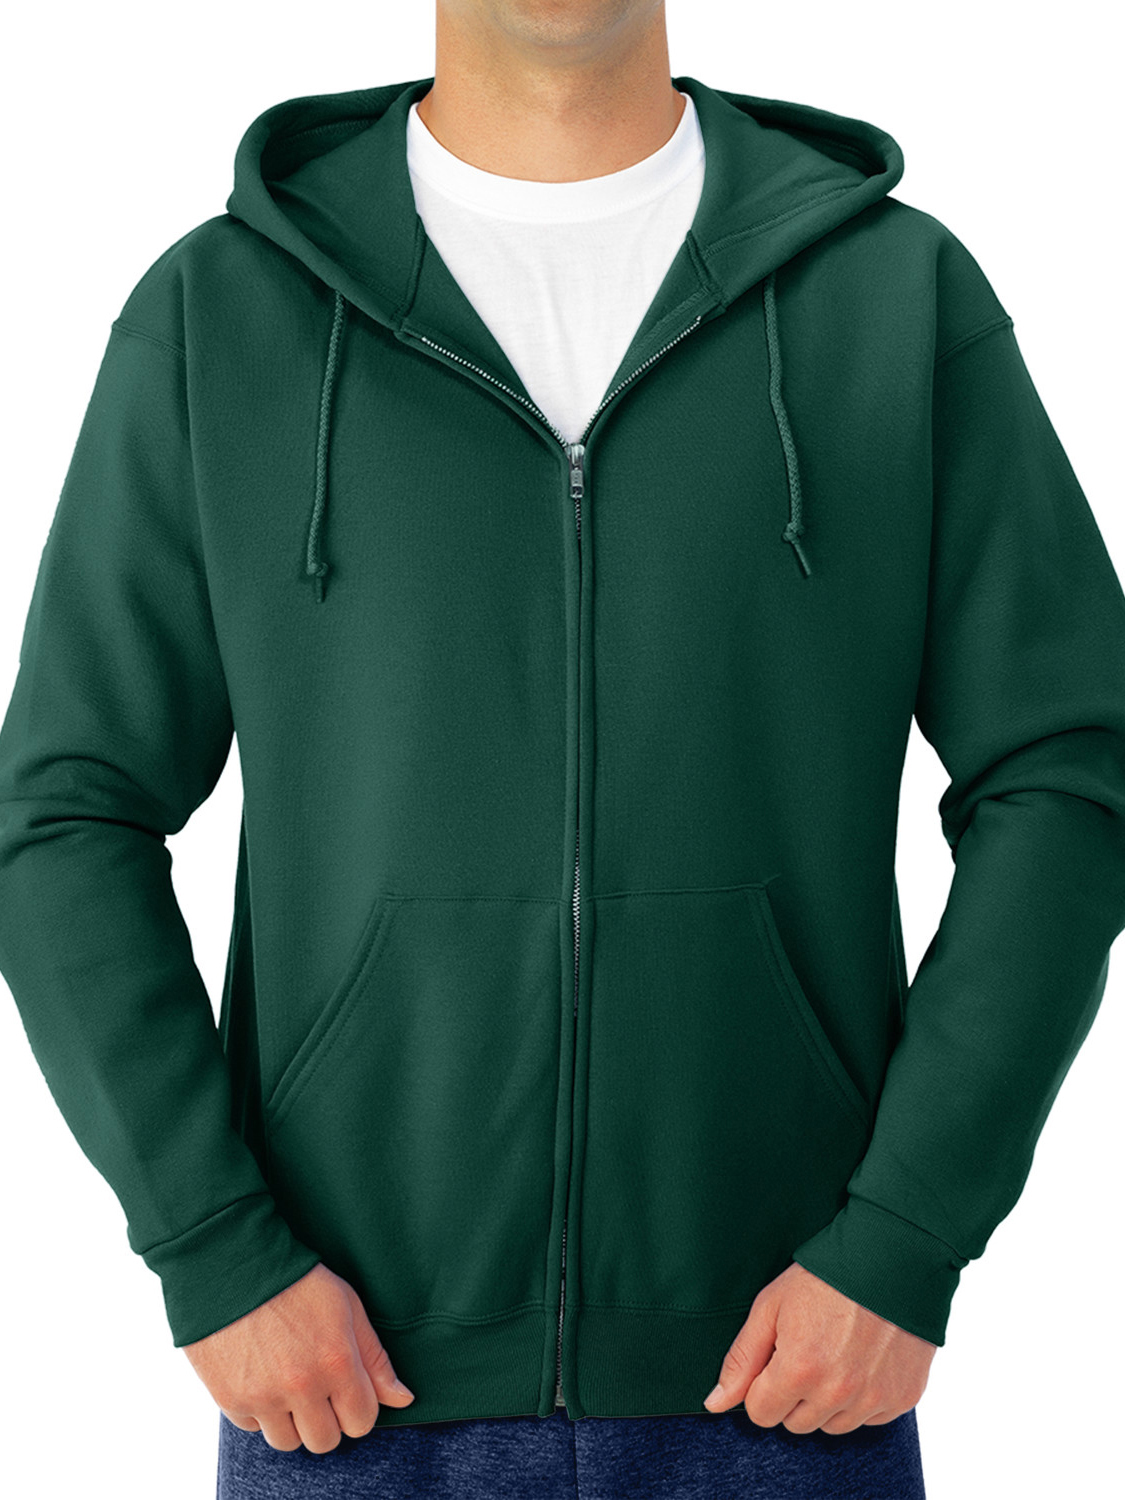 Jerzees Men's and Big Men's Fleece Full Zip Hooded Jacket - image 1 of 5